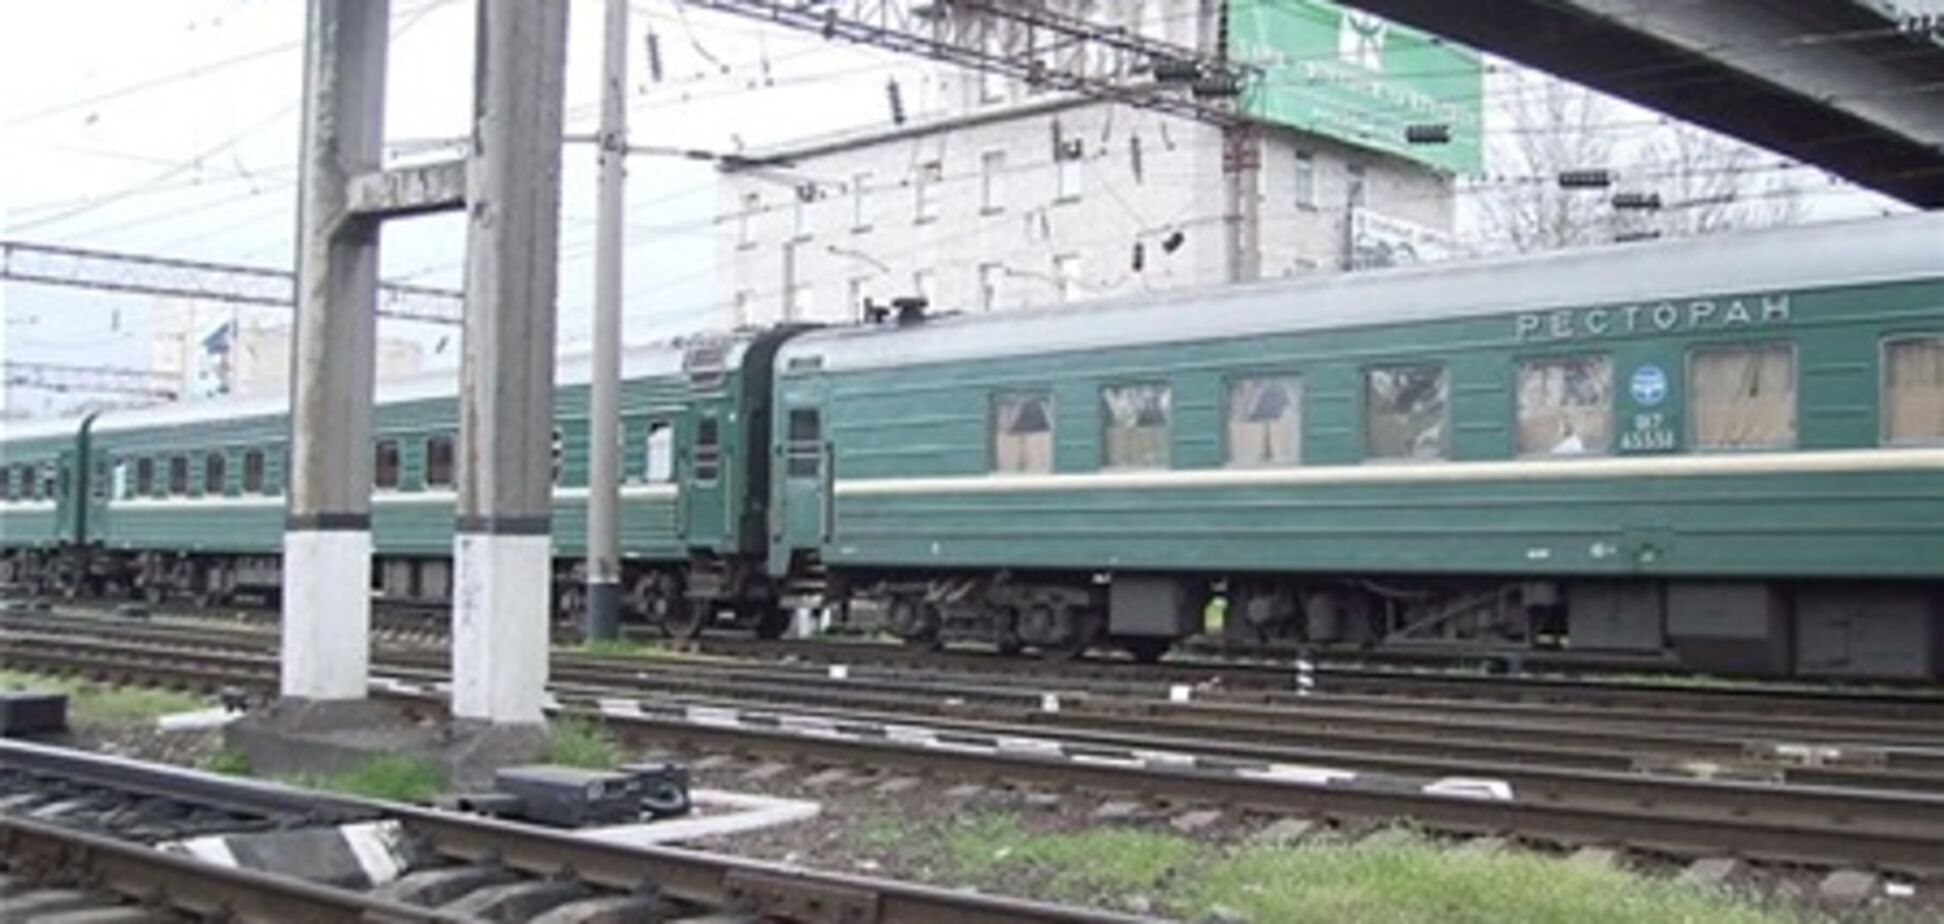 В камере повесился иностранец, снятый с поезда Москва-Одесса